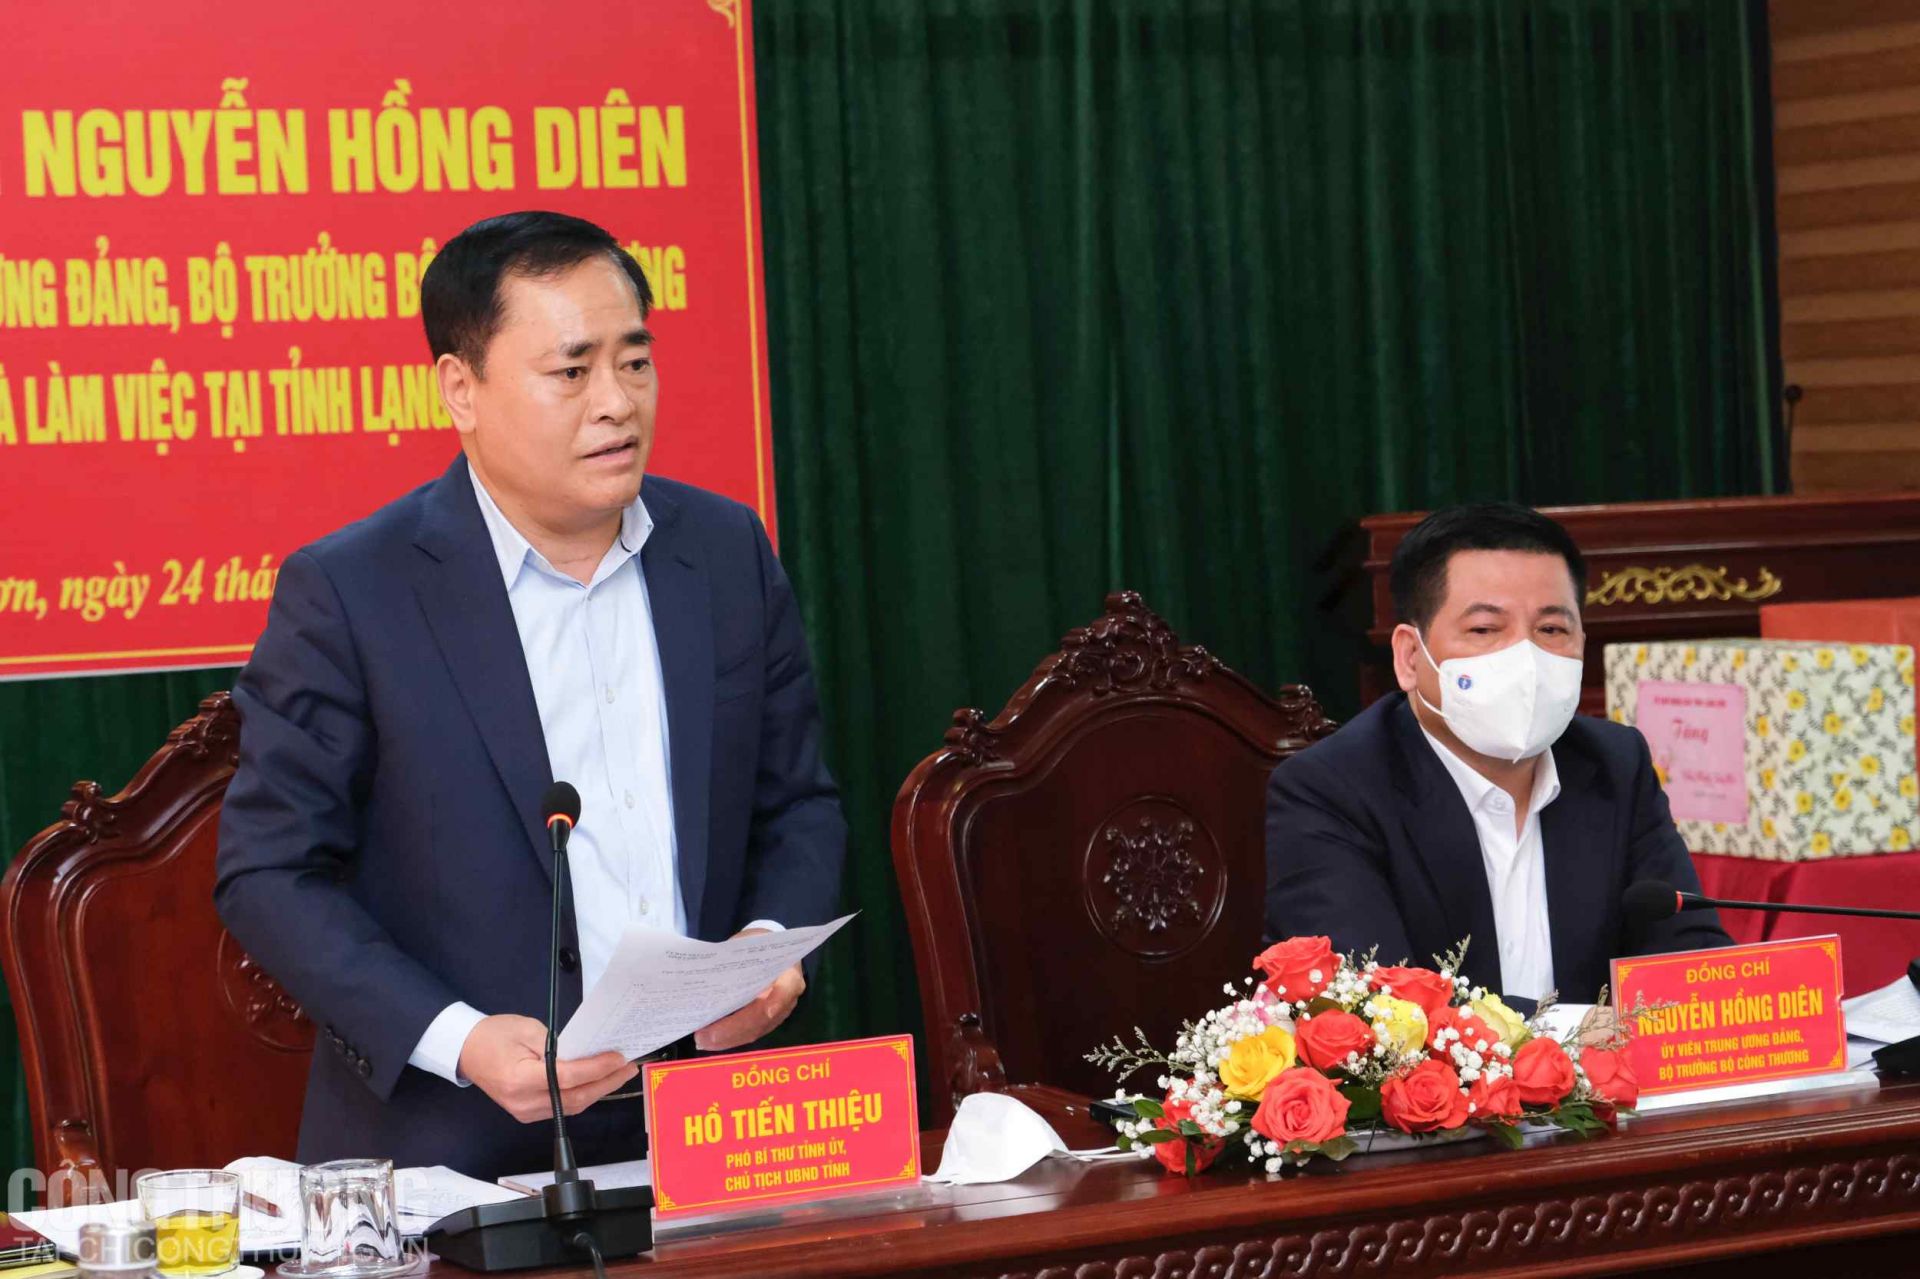 Ông Hồ Tiến Thiệu - Phó Bí thư Tỉnh ủy, Chủ tịch UBND tỉnh Lạng Sơn